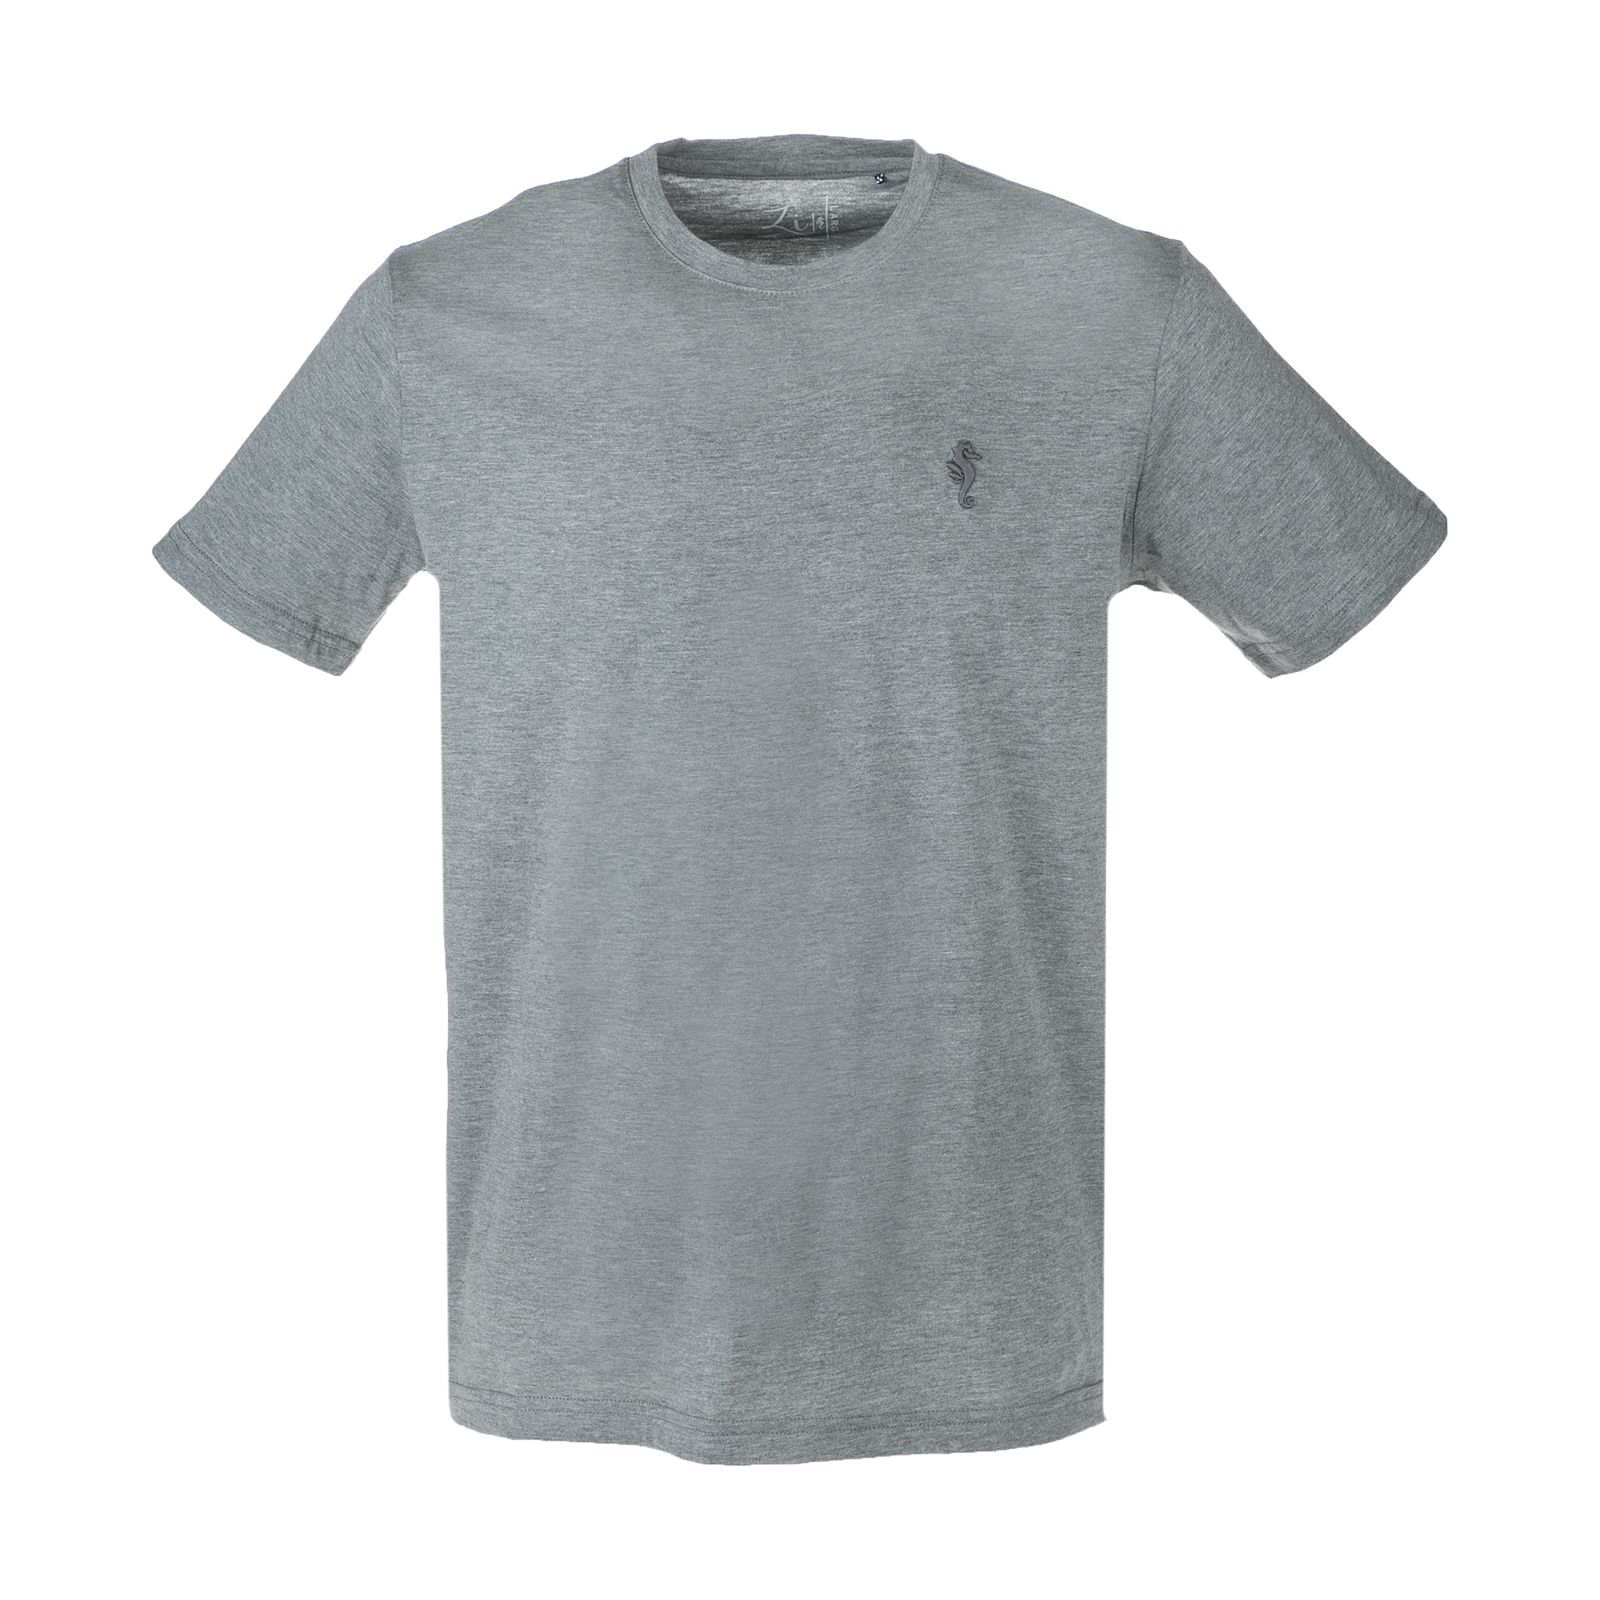 تی شرت مردانه زی سا مدل 153113148 -  - 1